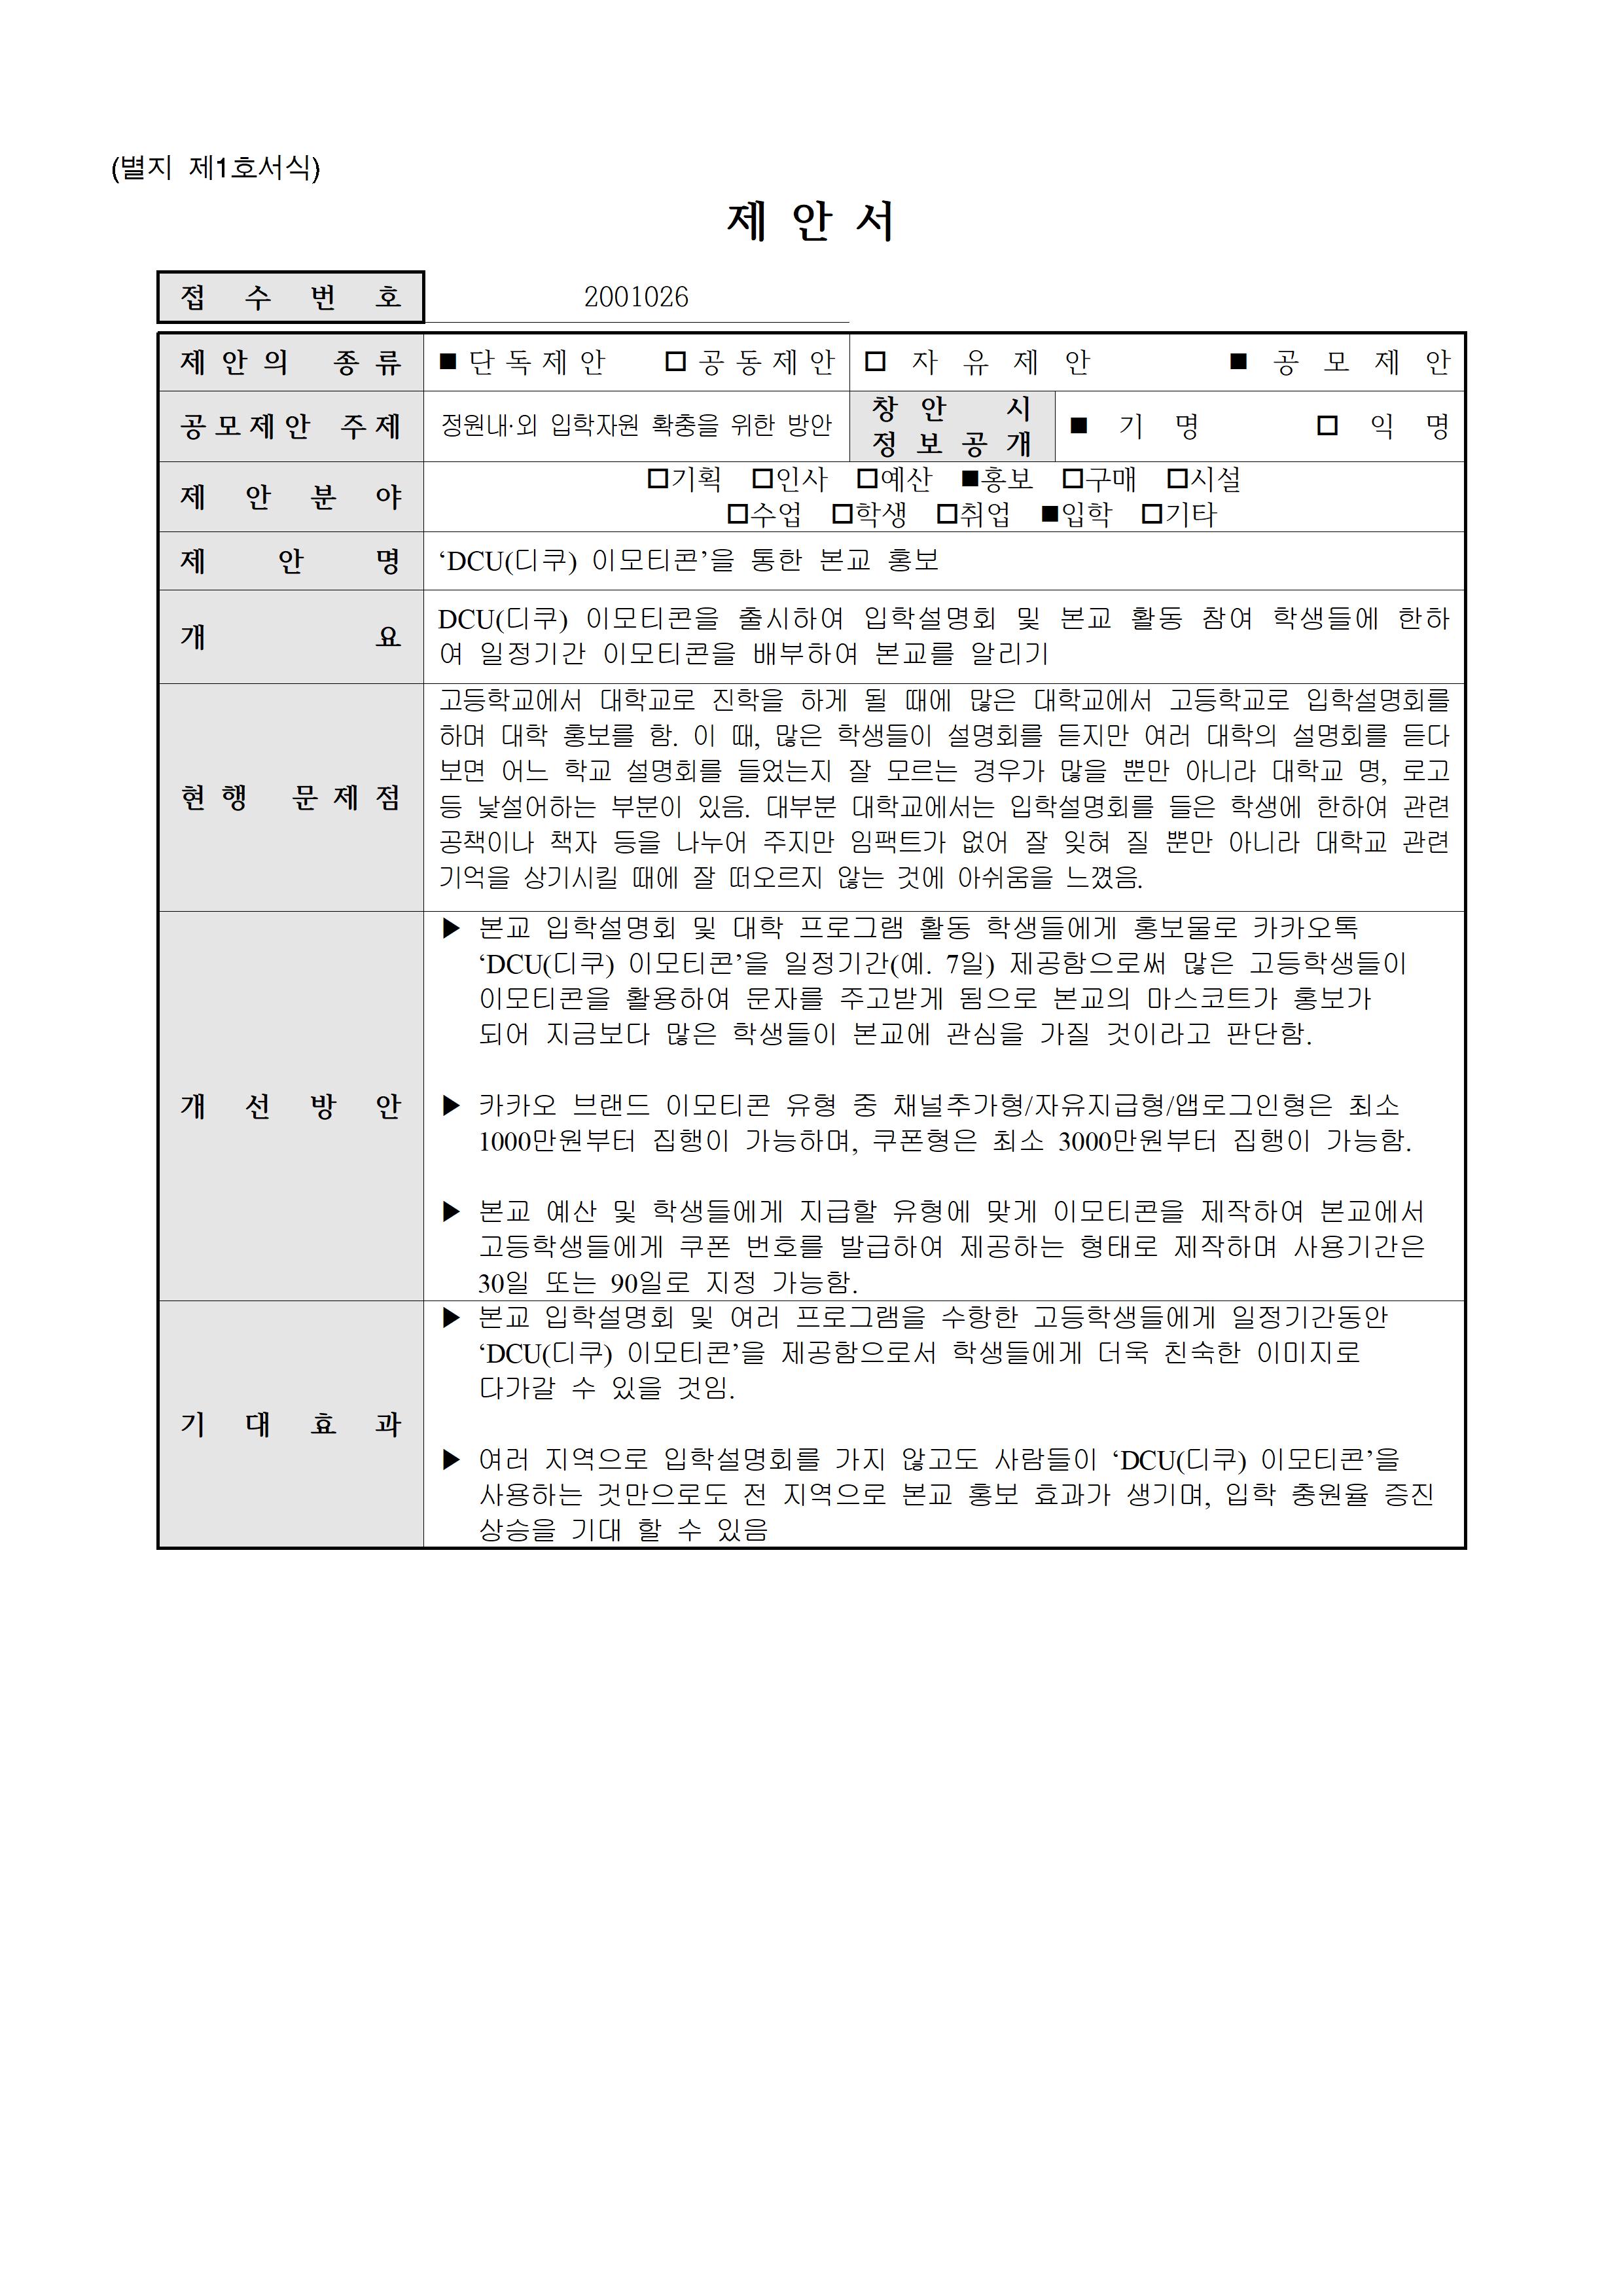 [홍보,입학](2001026)DCU(디쿠) 이모티콘을 통한 본교 홍보▶5등급